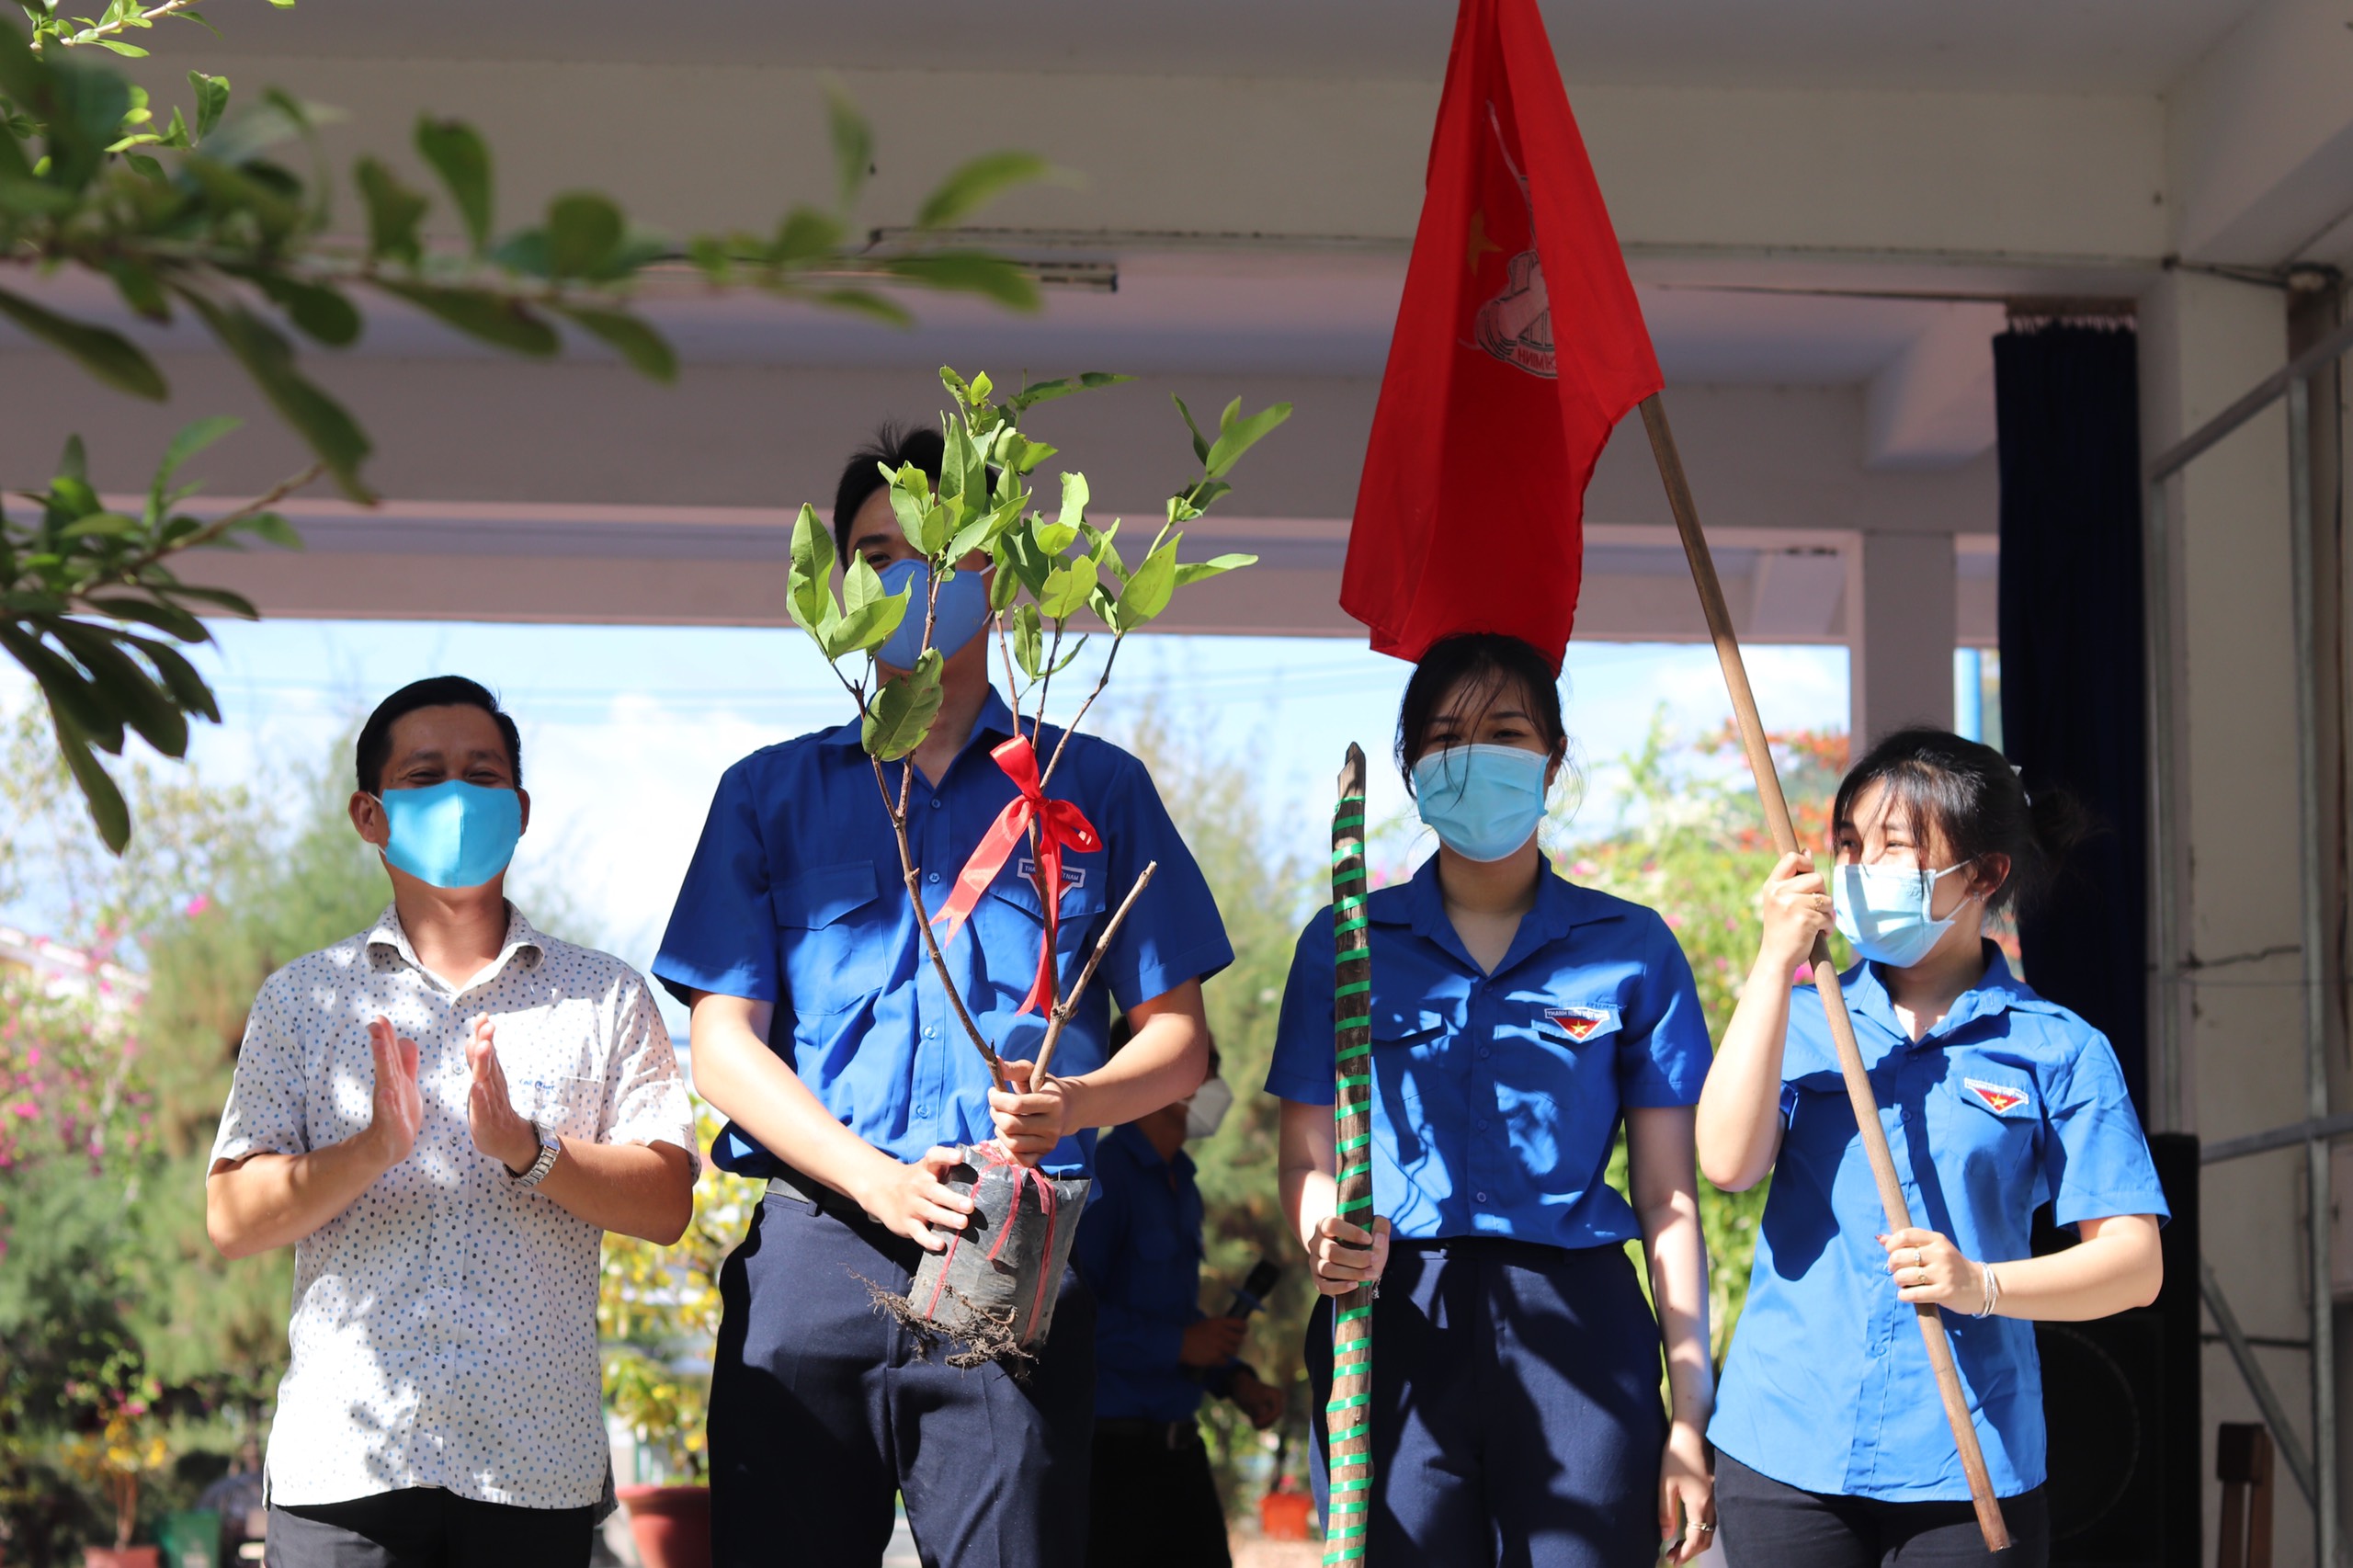 Đồng chí Mai Lê Thủy - Bí thư chi bộ, Hiệu trưởng nhà trường trao tặng cây trồng cho thế hệ trẻ